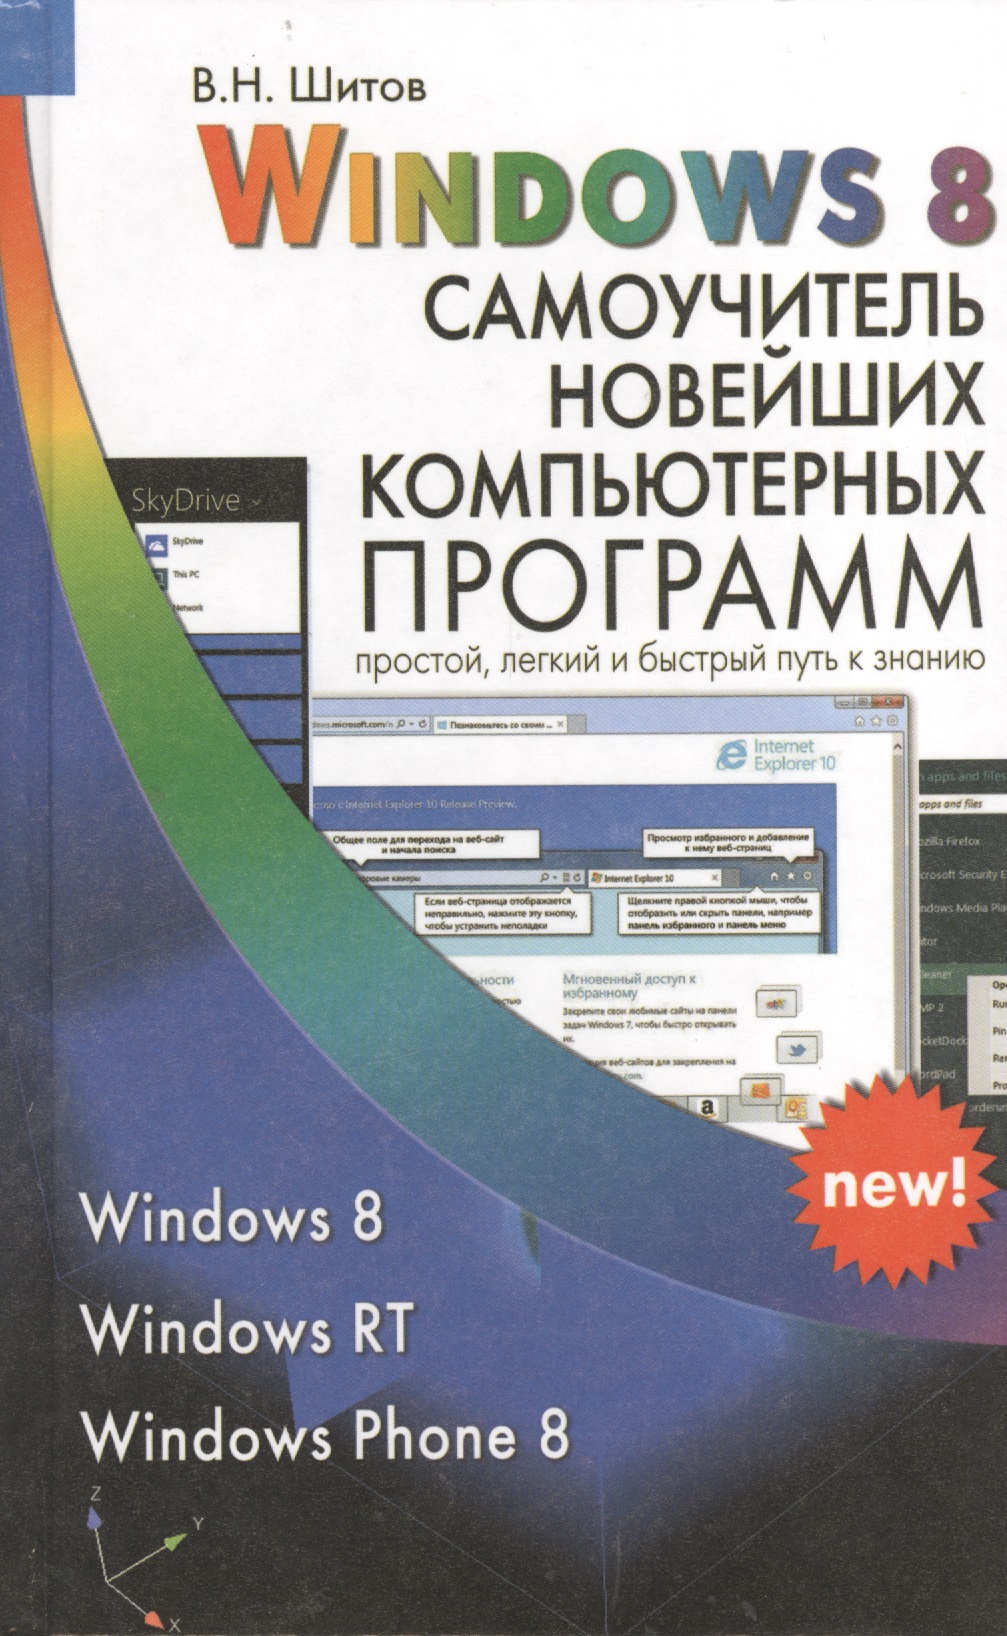 цена Шитов Виктор Николаевич Windows 8 Самоучитель новейших компьютерных программ (Шитов)